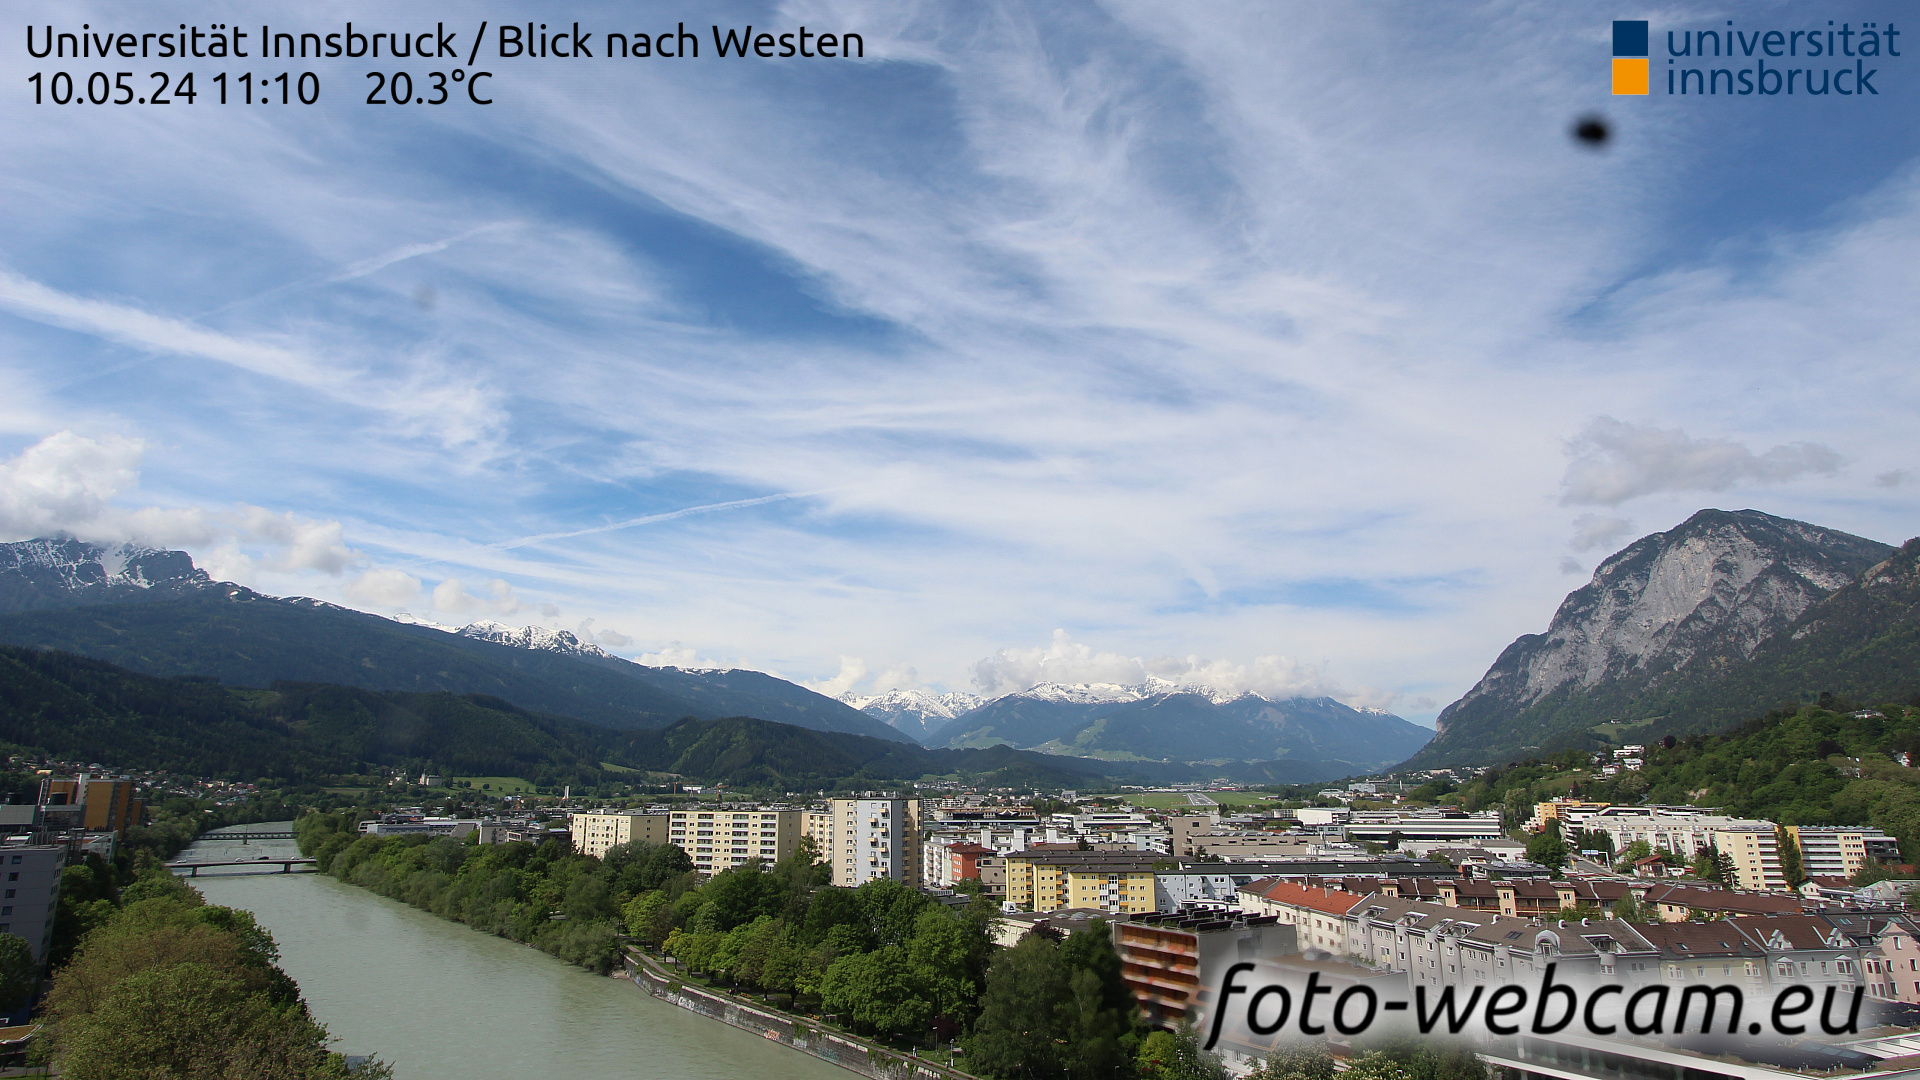 Innsbruck Dom. 11:17